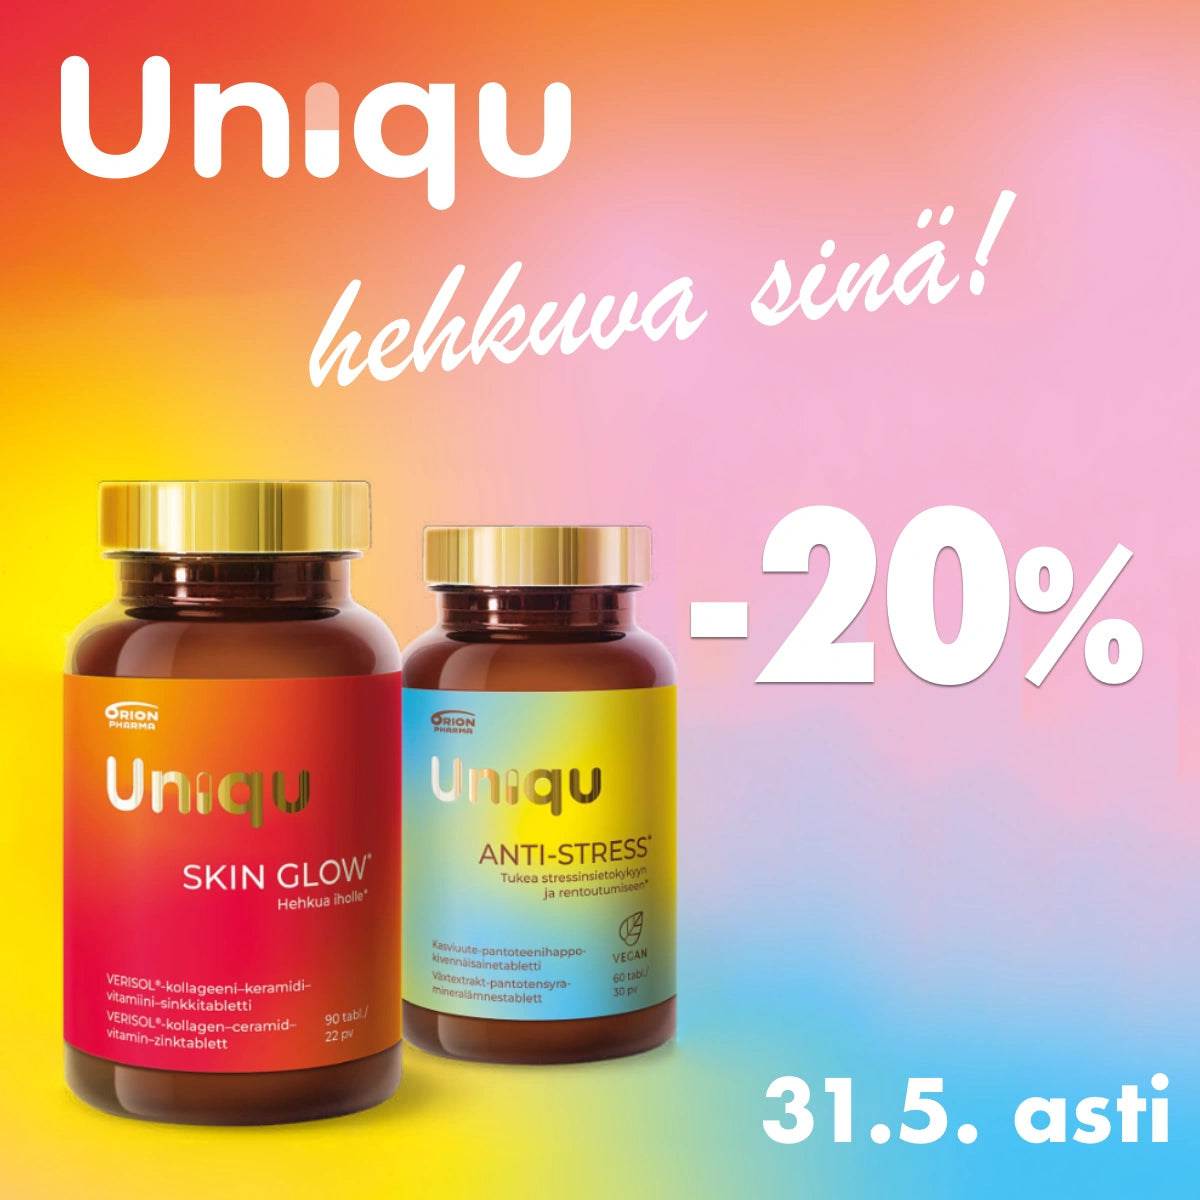 Uniqu -20% toukokuun ajan